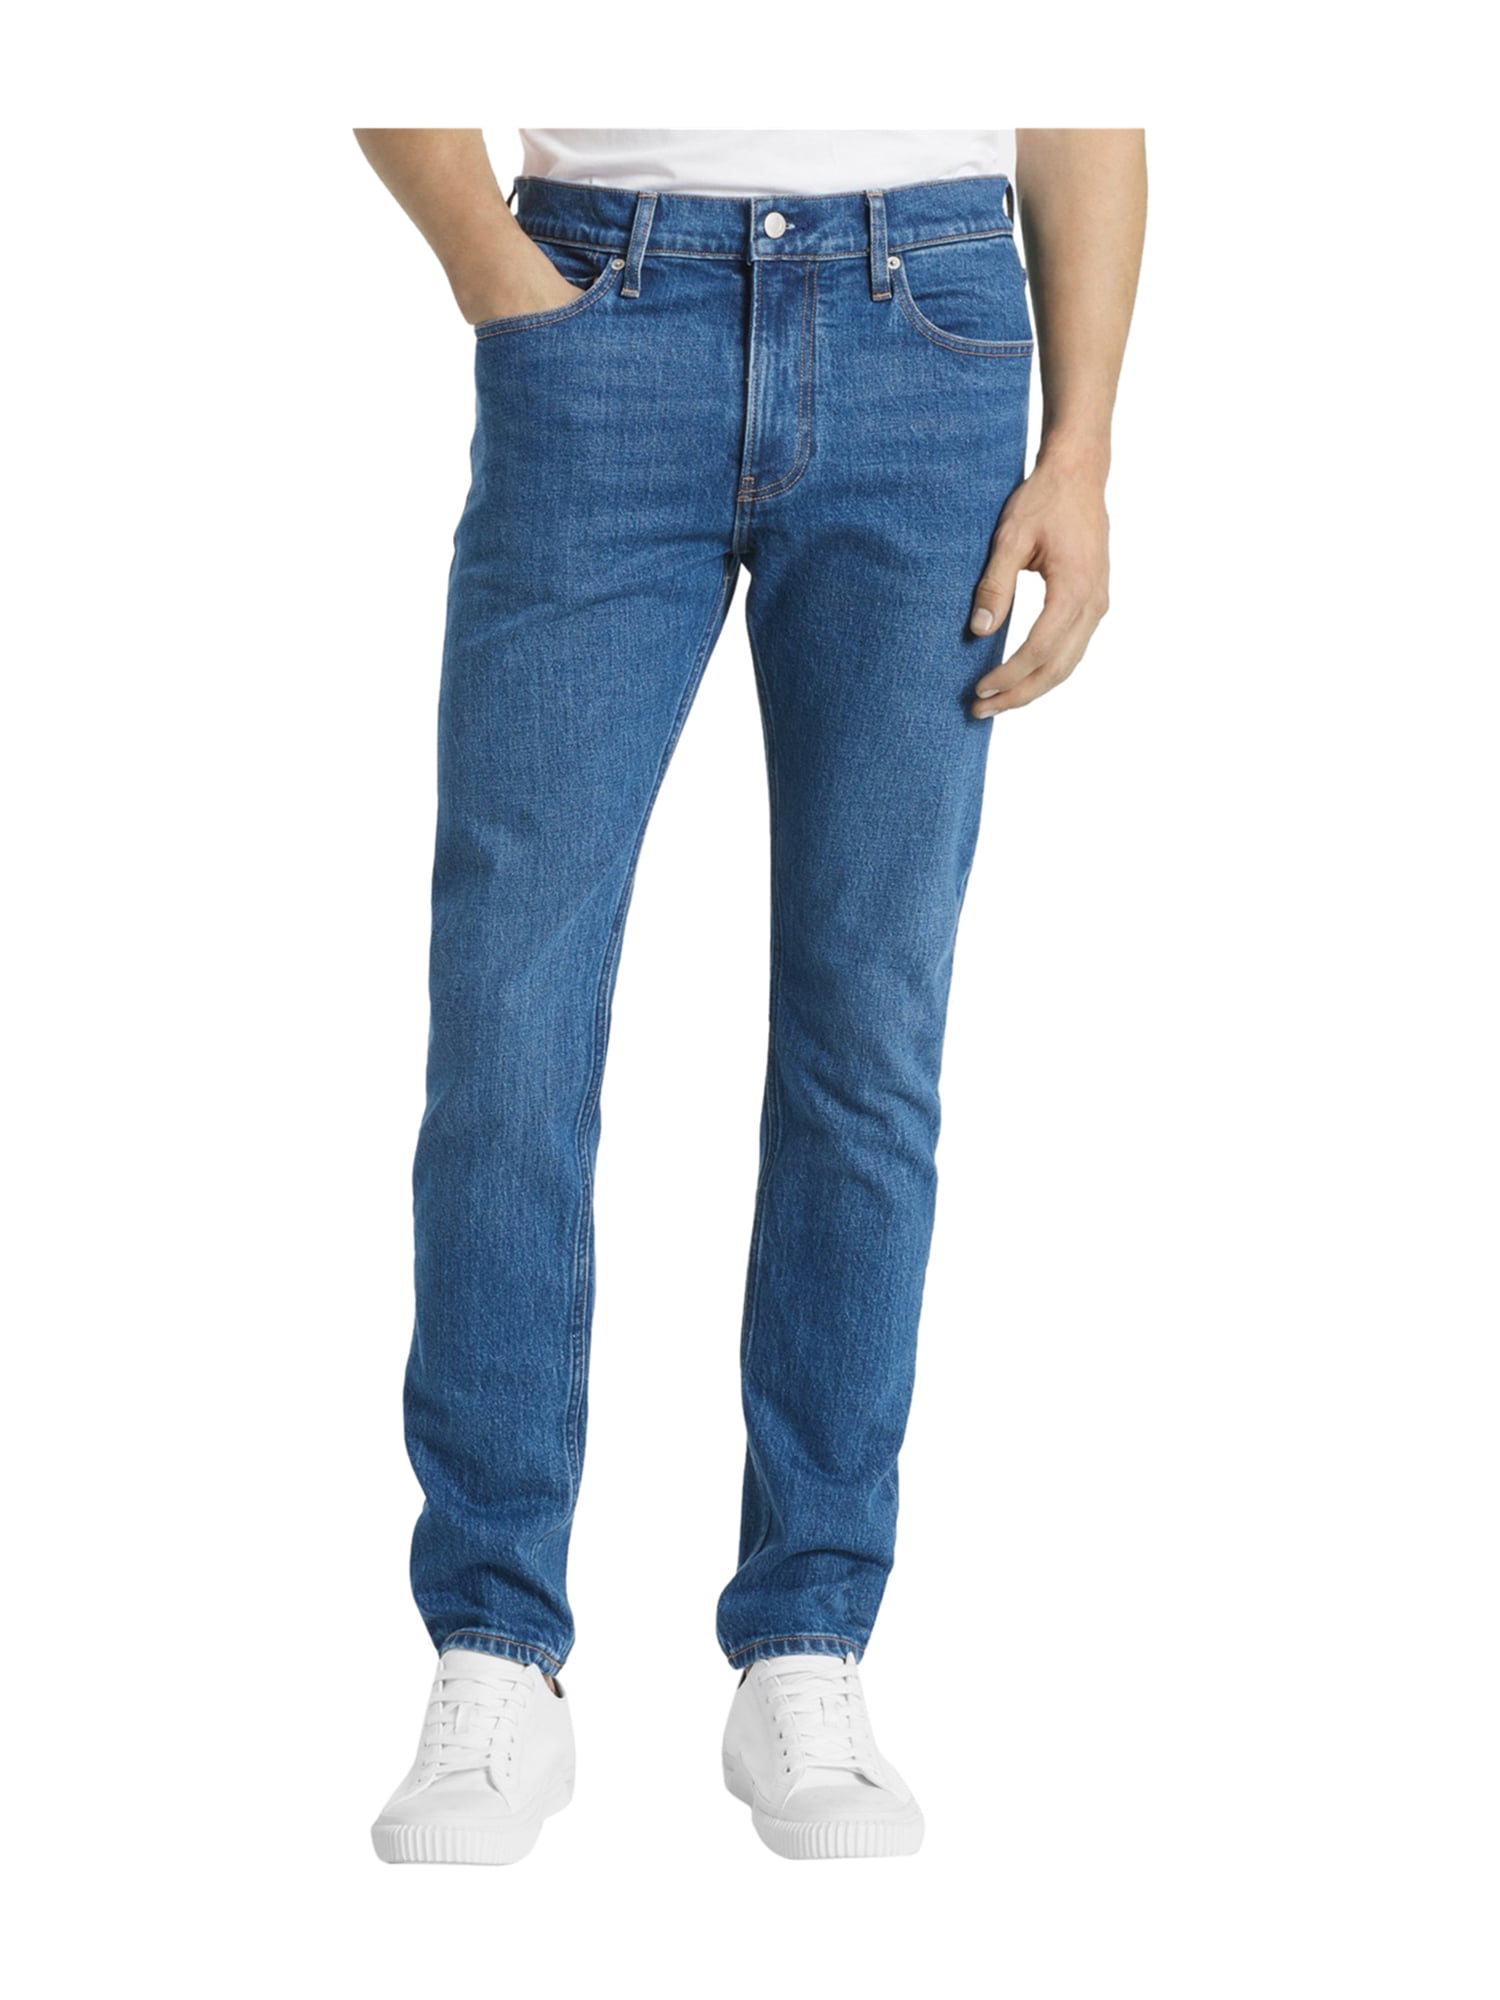 Calvin Klein Mens Back Pocket Logo Slim Fit Jeans blue 33x32 | Walmart ...